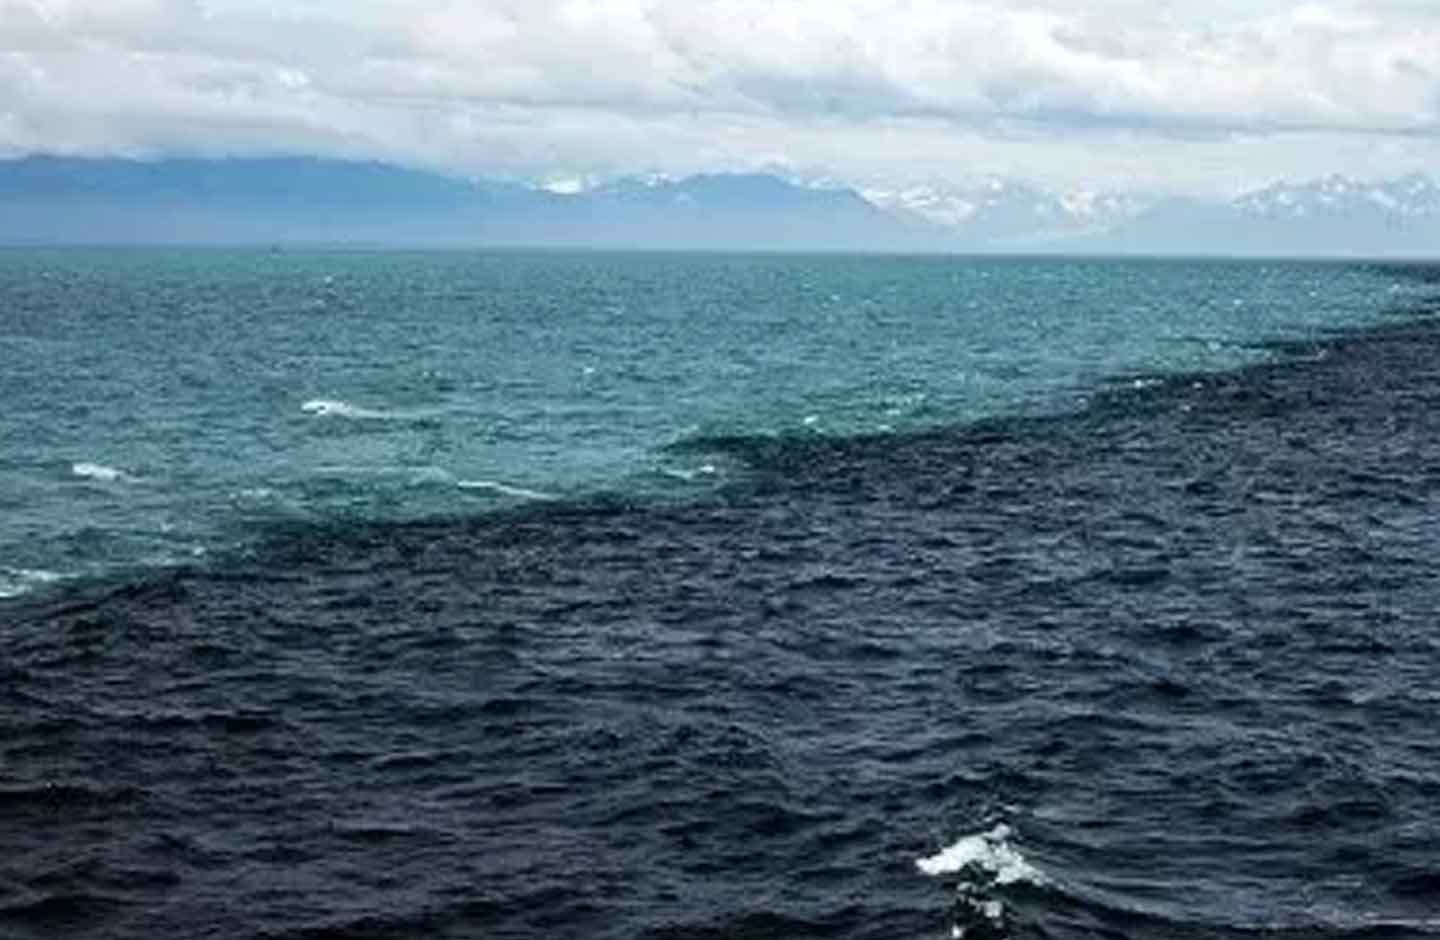 черное и азовское море соединяются